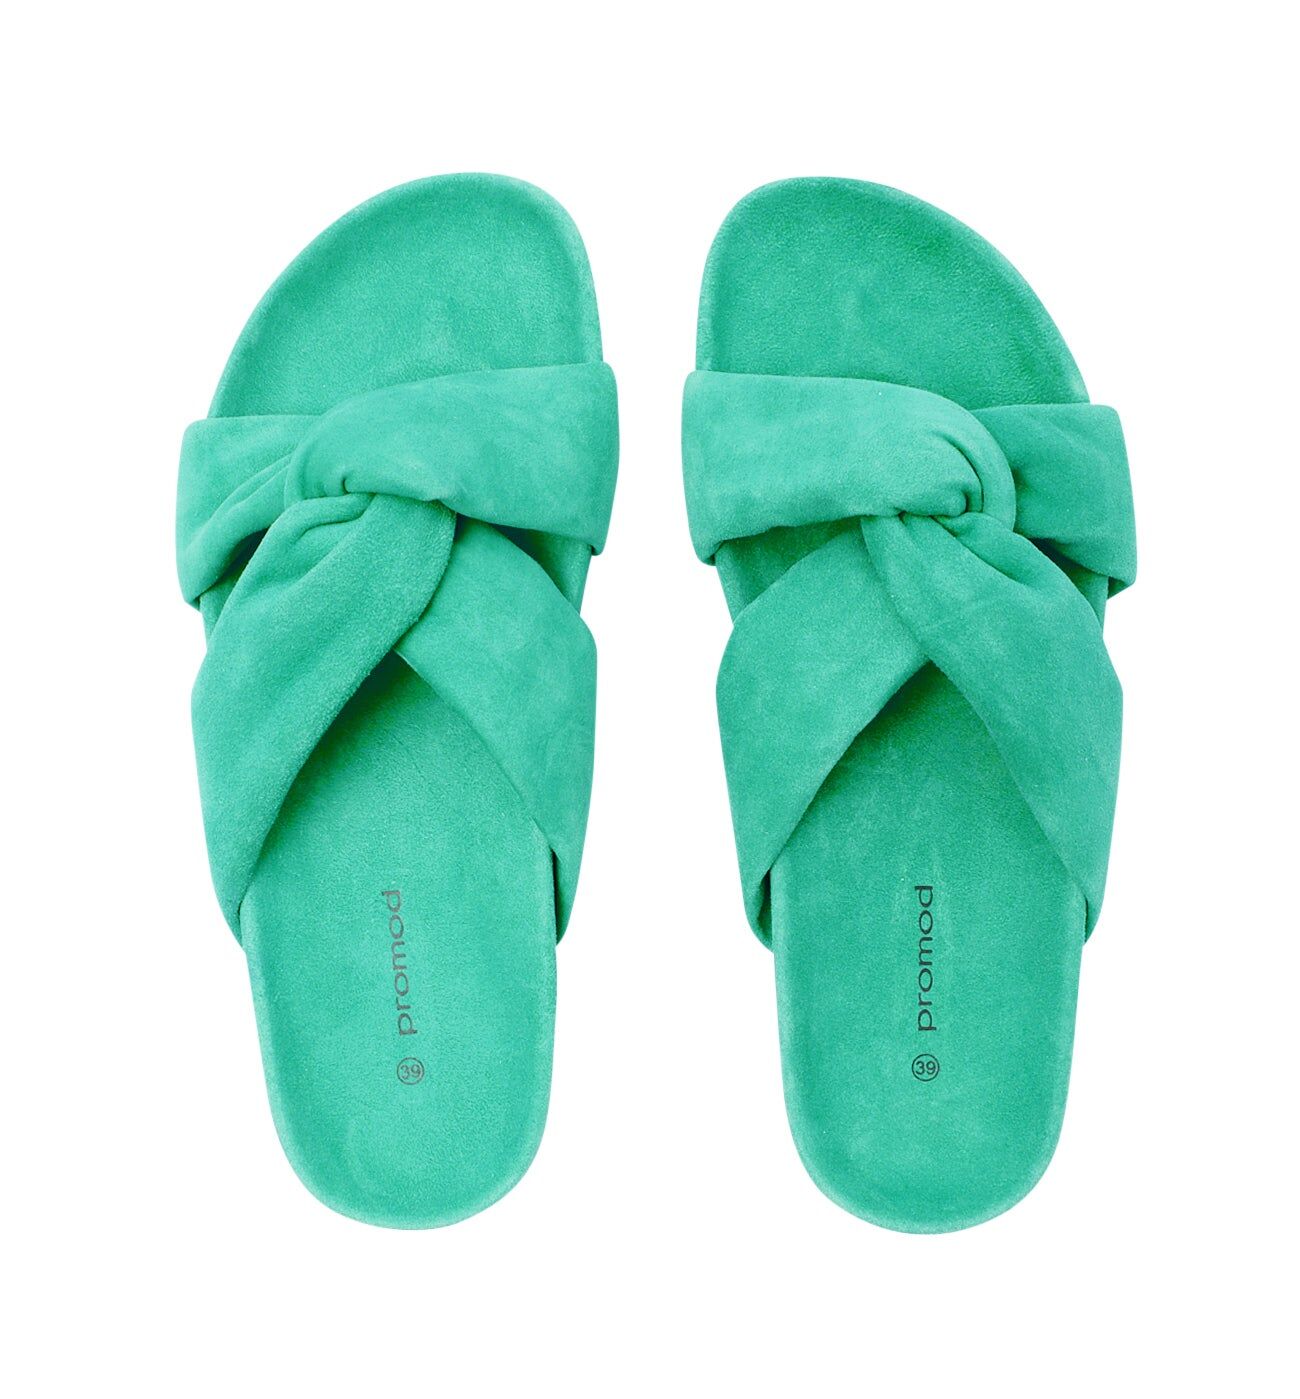 Sandales en cuir Femme Vert 36